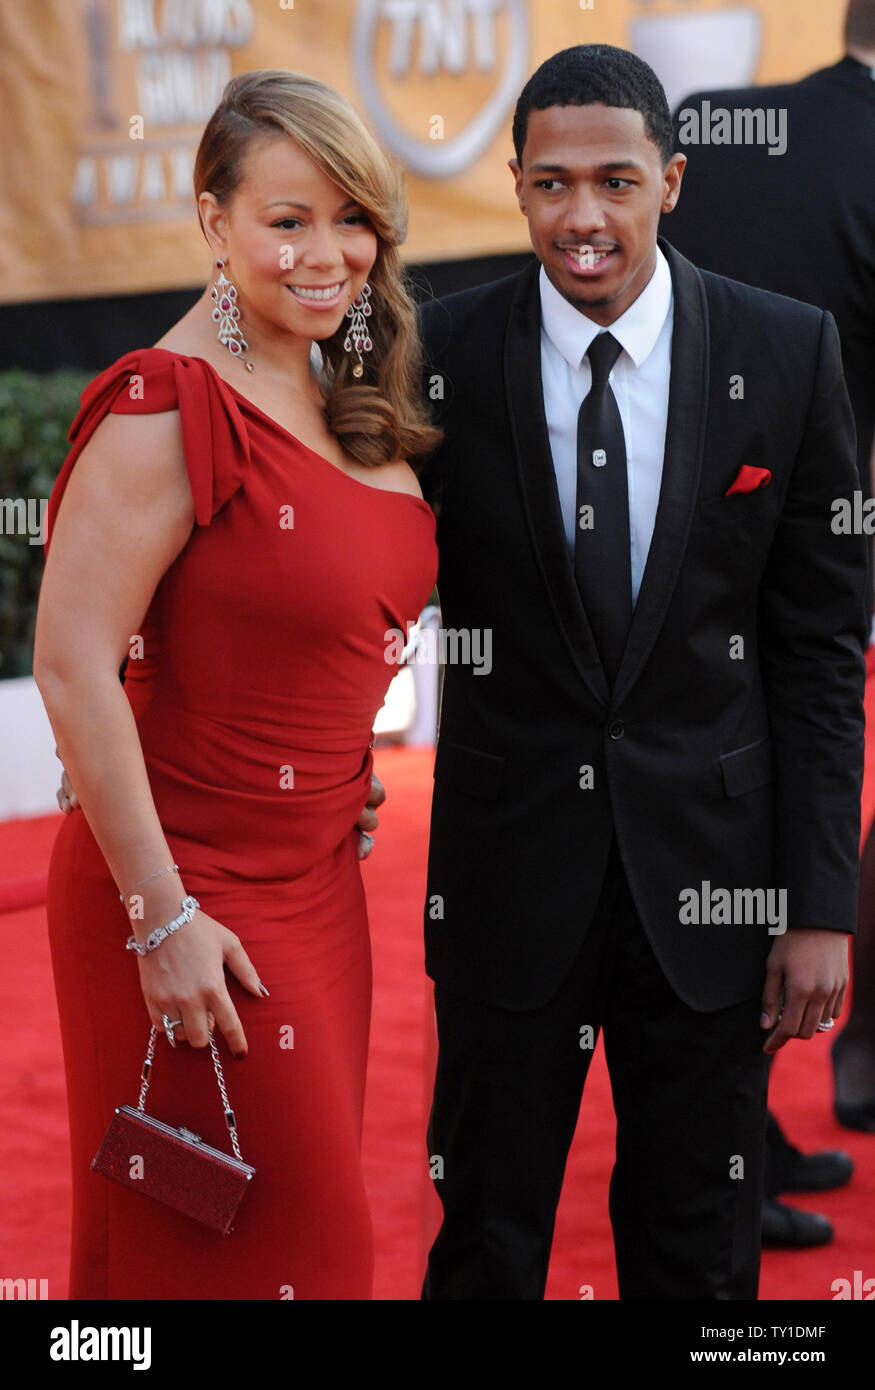 Sängerin Mariah Carey und ihr Mann, der Schauspieler Nick Cannon am 16. jährlichen Screen Actors Guild Awards in Los Angeles am 23. Januar 2010. UPI/Jim Ruymen Stockfoto